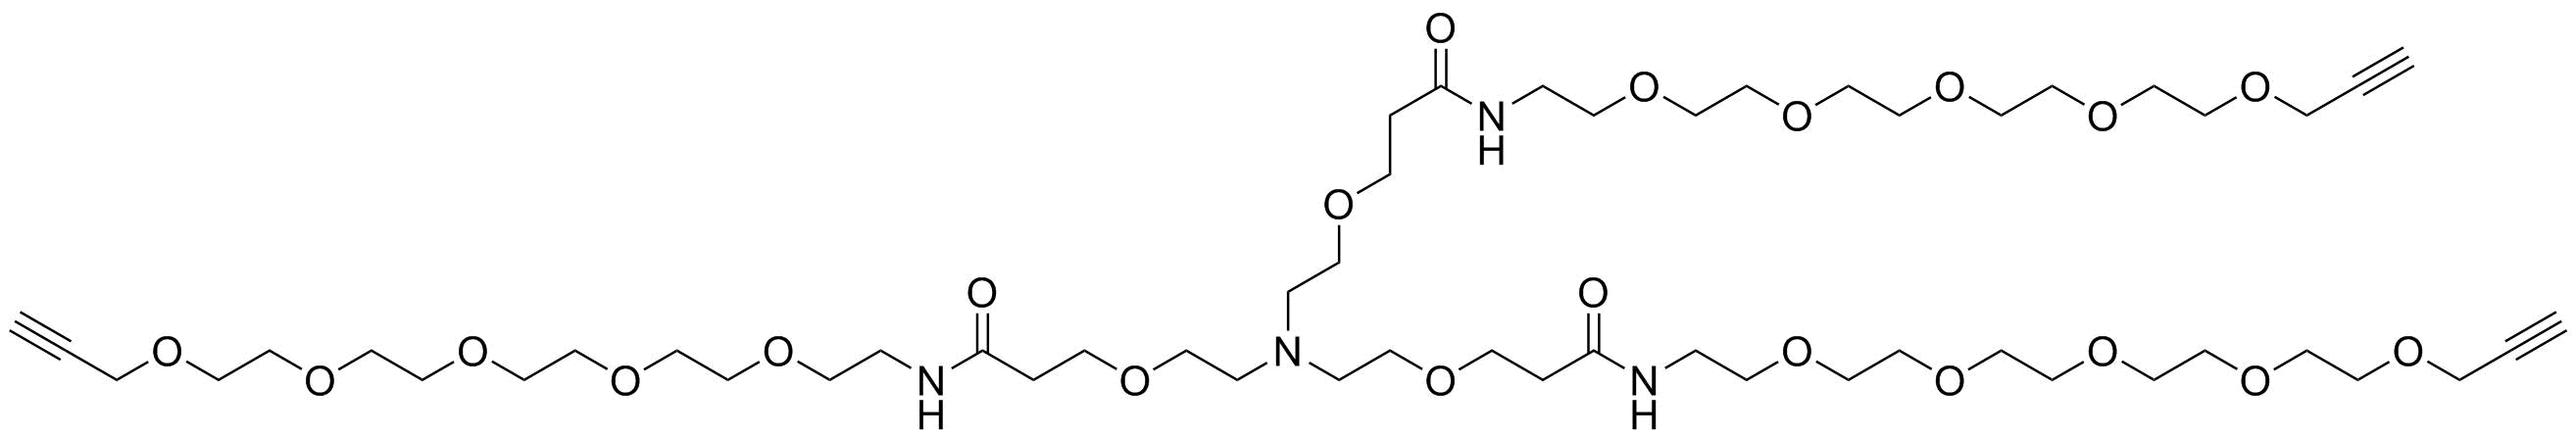 Tri(propargyl-PEG5-NHCO-ethyloxyethyl)amine